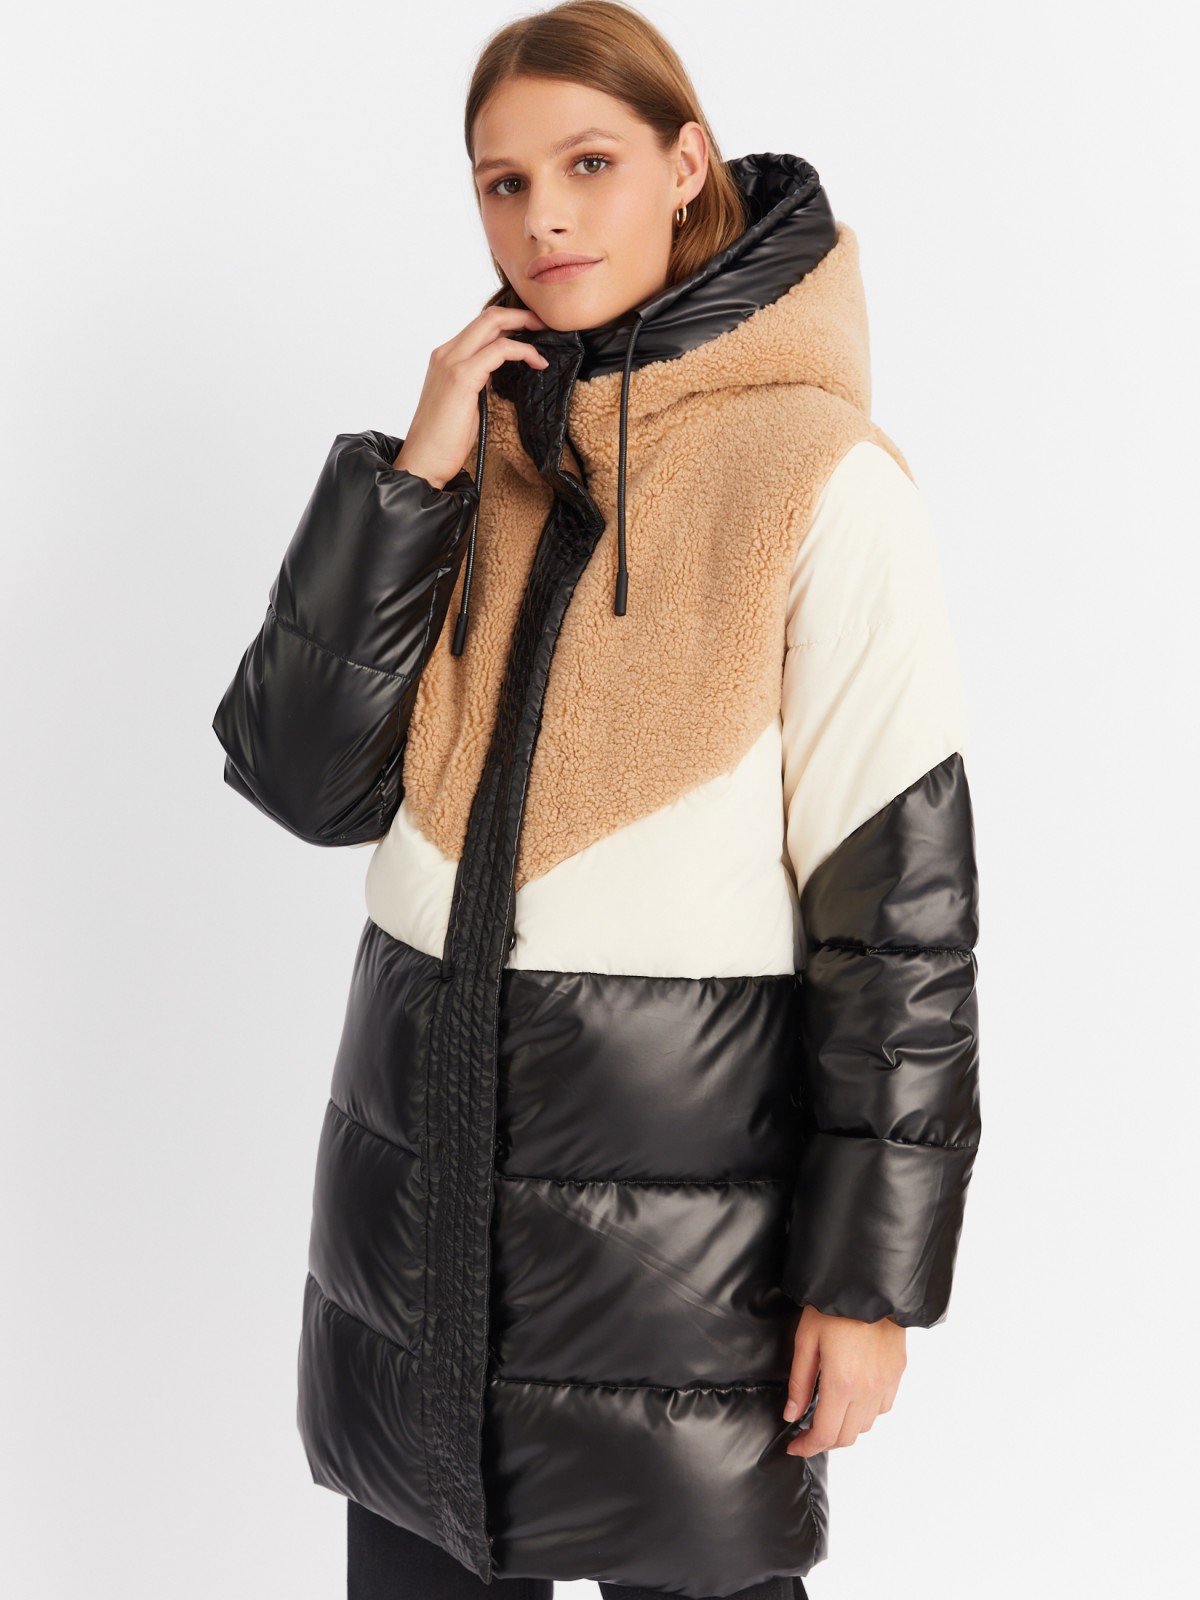 Тёплая куртка-пальто из экокожи с отделкой из экомеха и капюшоном zolla 023425212114, цвет черный, размер S